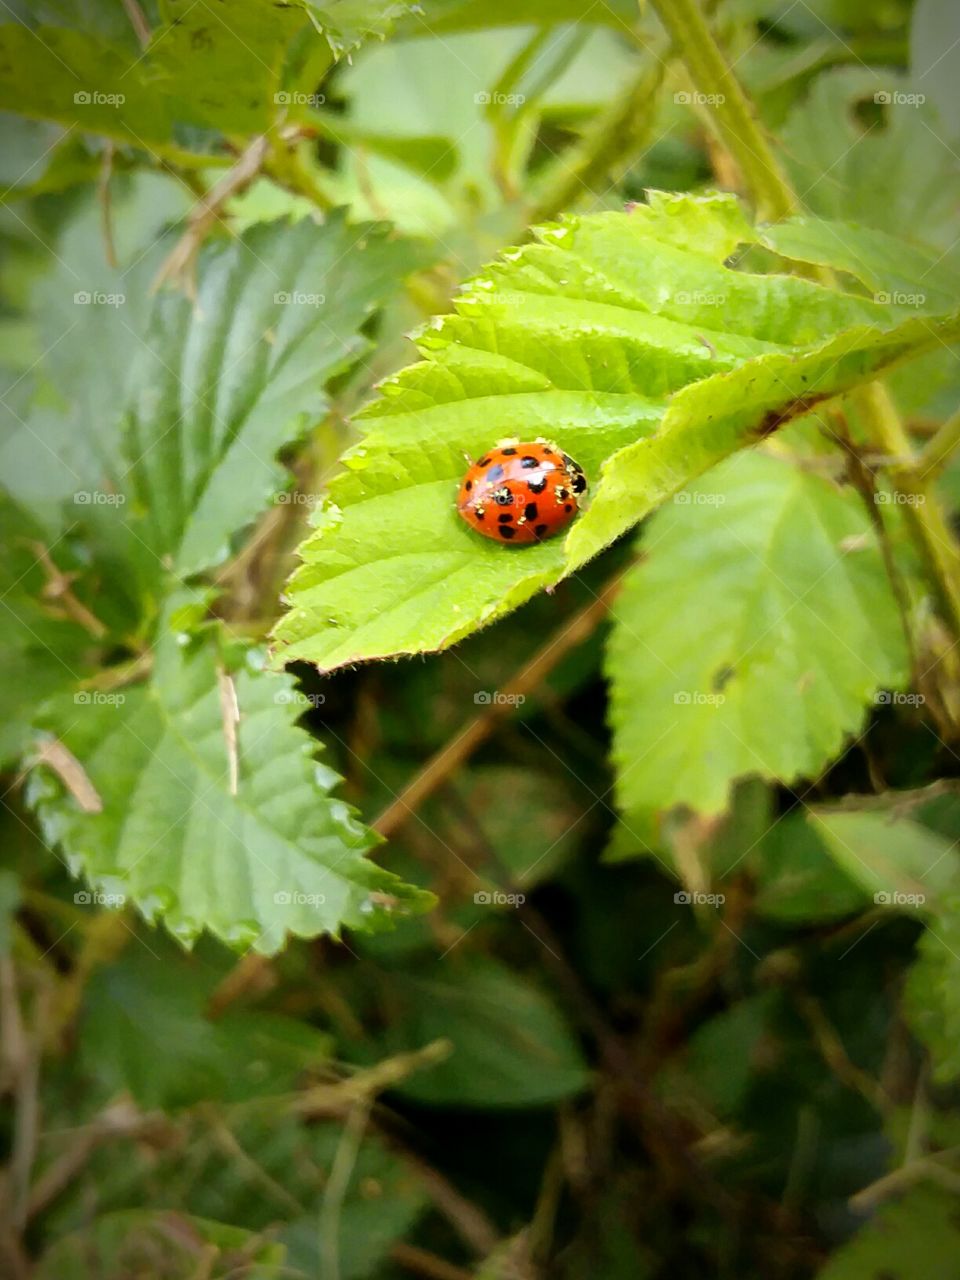 Lady Bug on a leaf